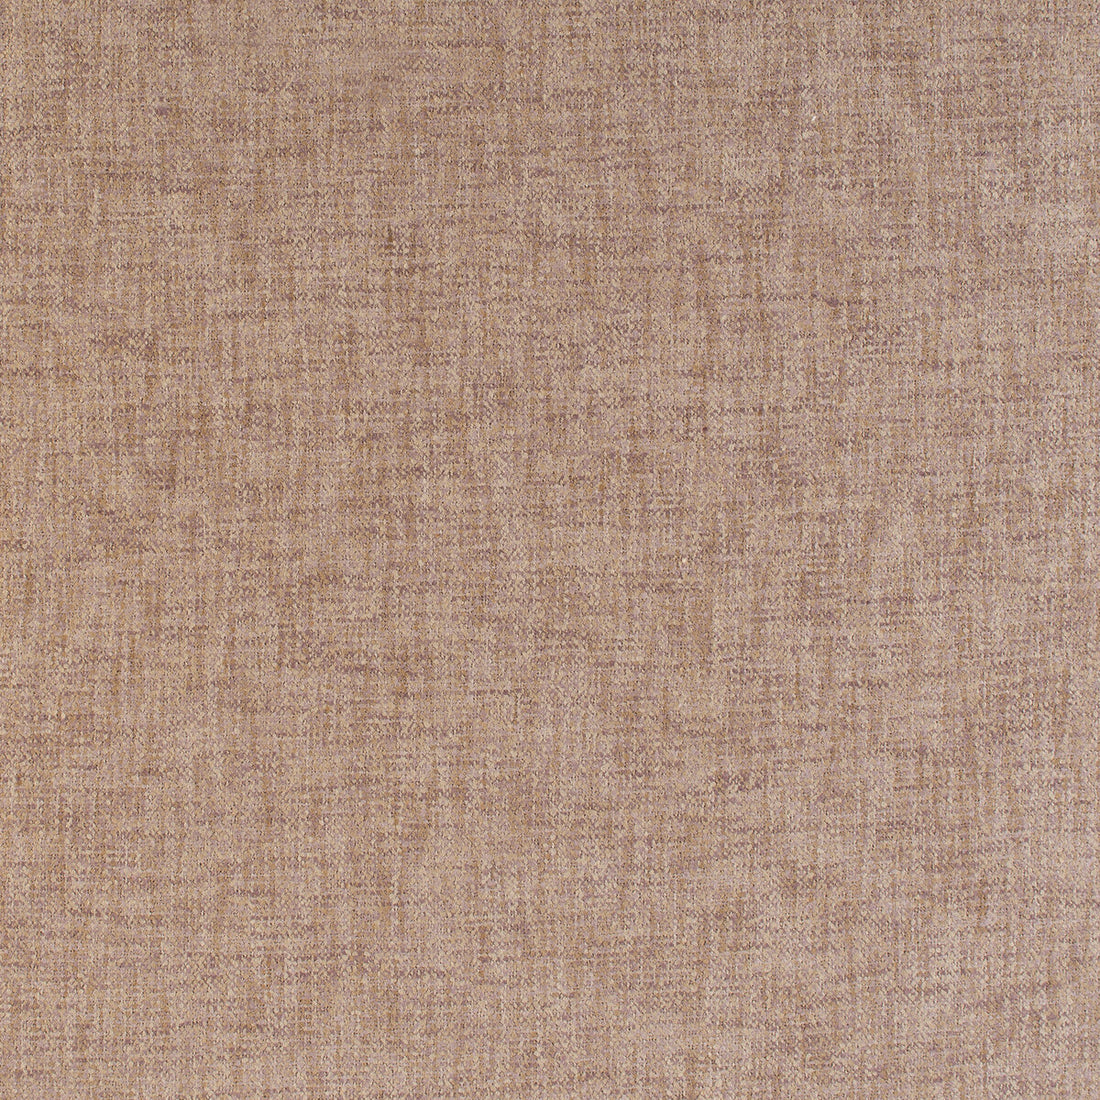 Kravet Basics fabric in 35455-10 color - pattern 35455.10.0 - by Kravet Basics